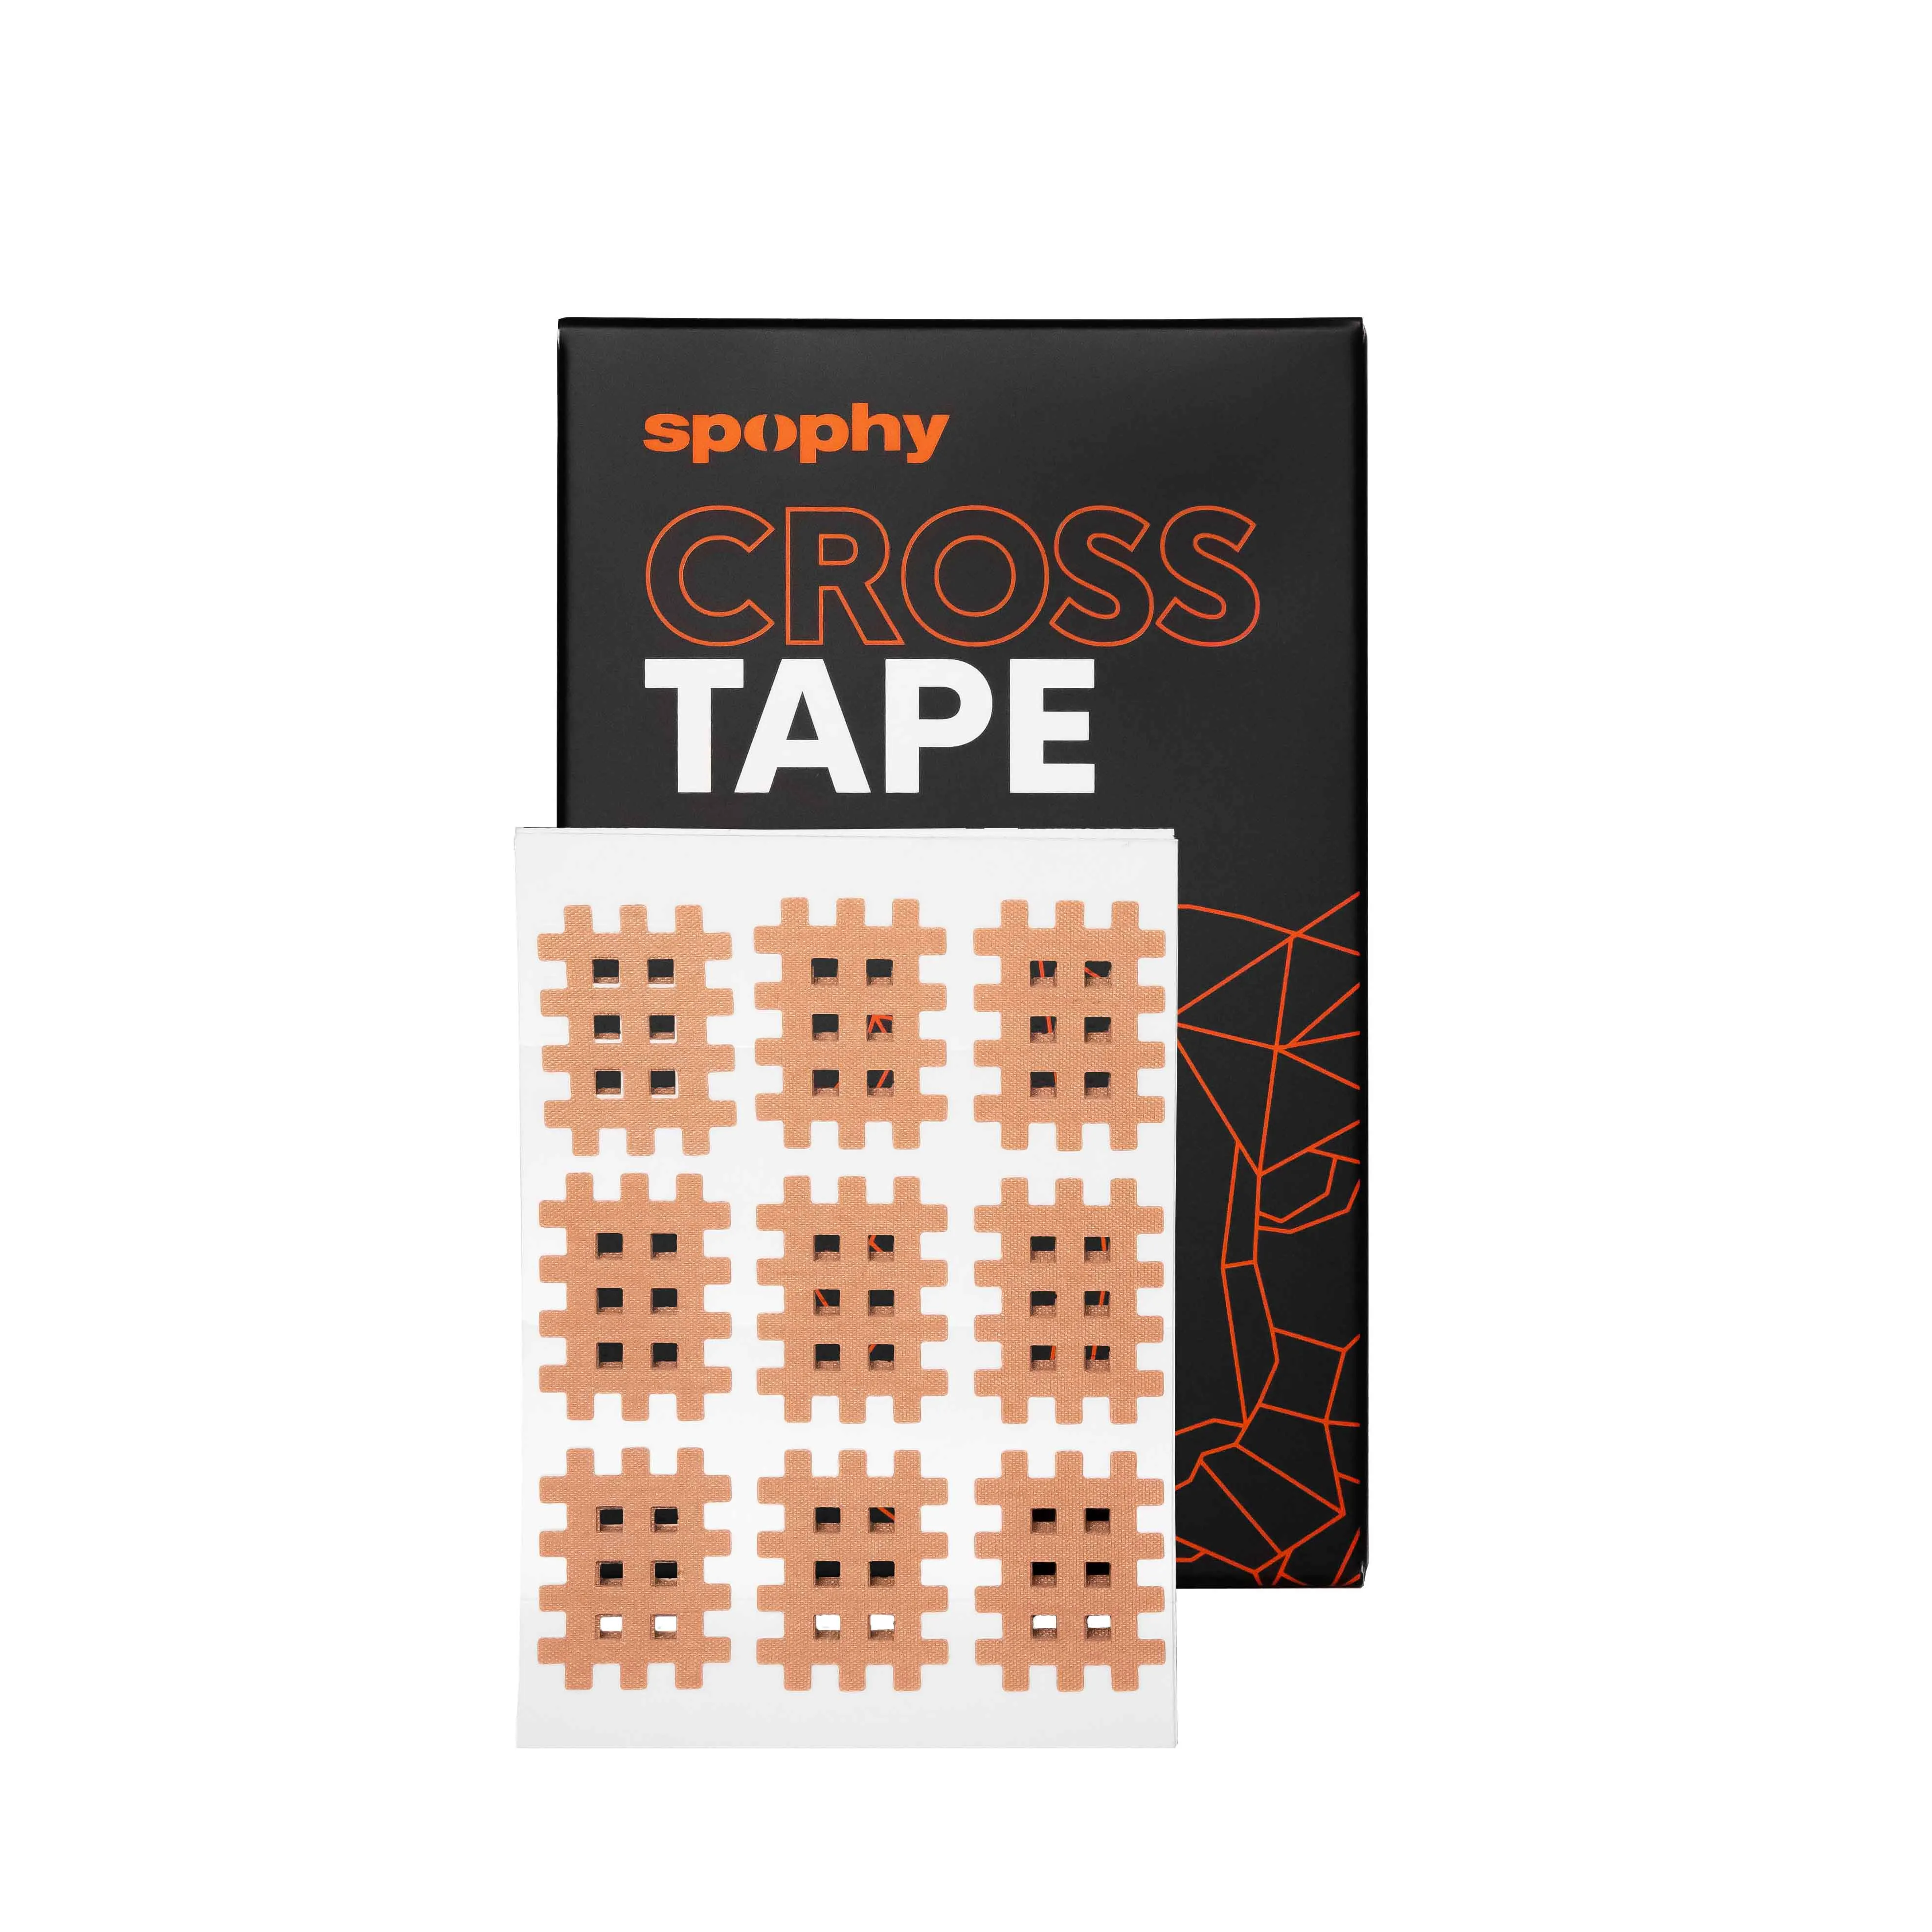 Spophy Cross Tape 1×1 ks, tejpovacia páska